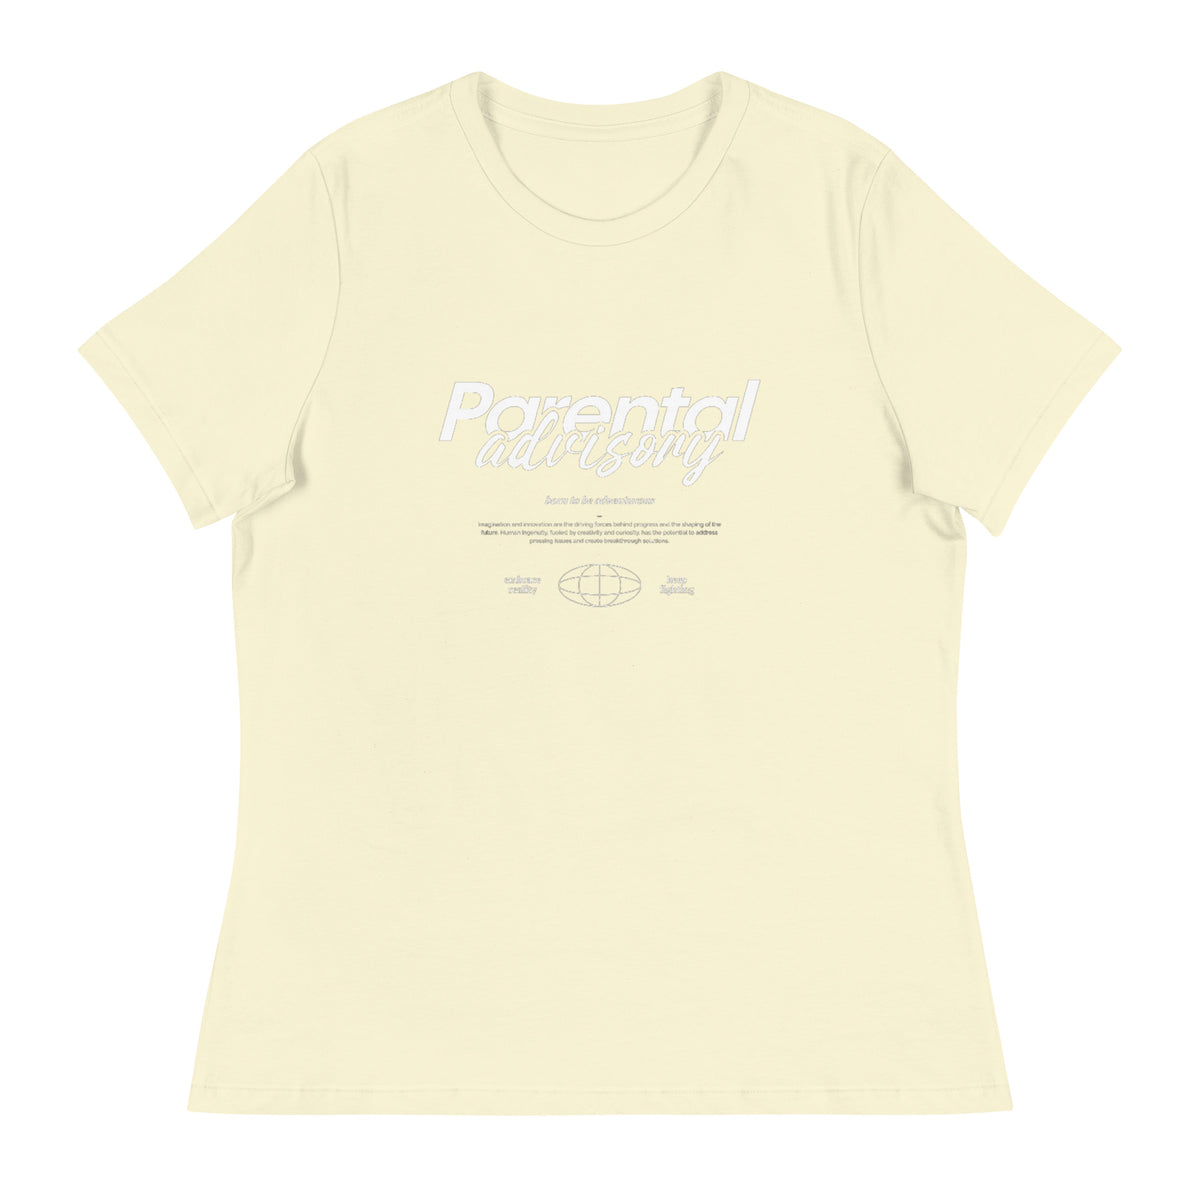 Parental Advisory T-Shirts